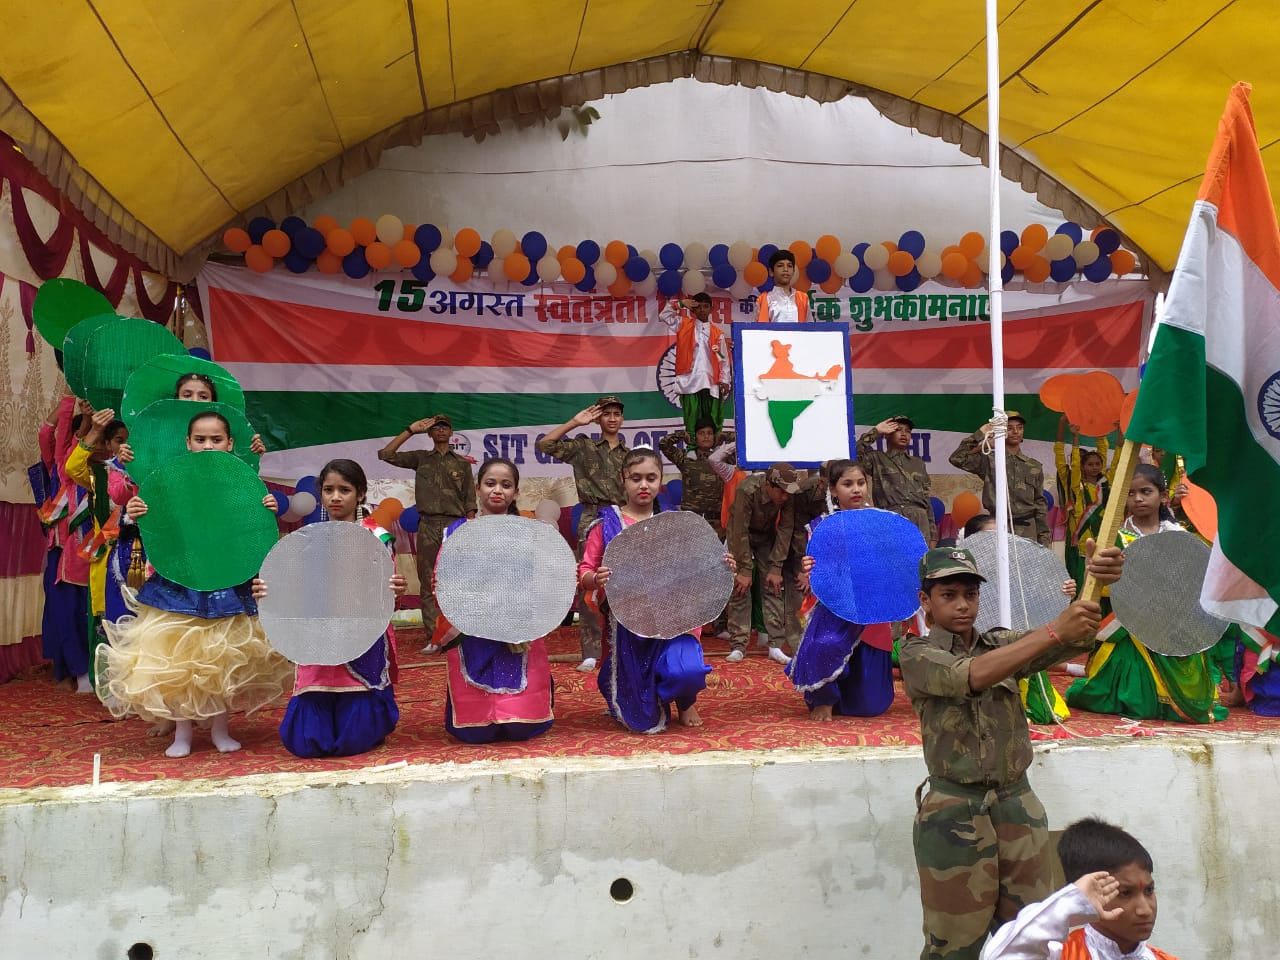   एसआईटी ग्रुप ने हर्षोल्लास के साथ मनाया स्वतंत्रता दिवस